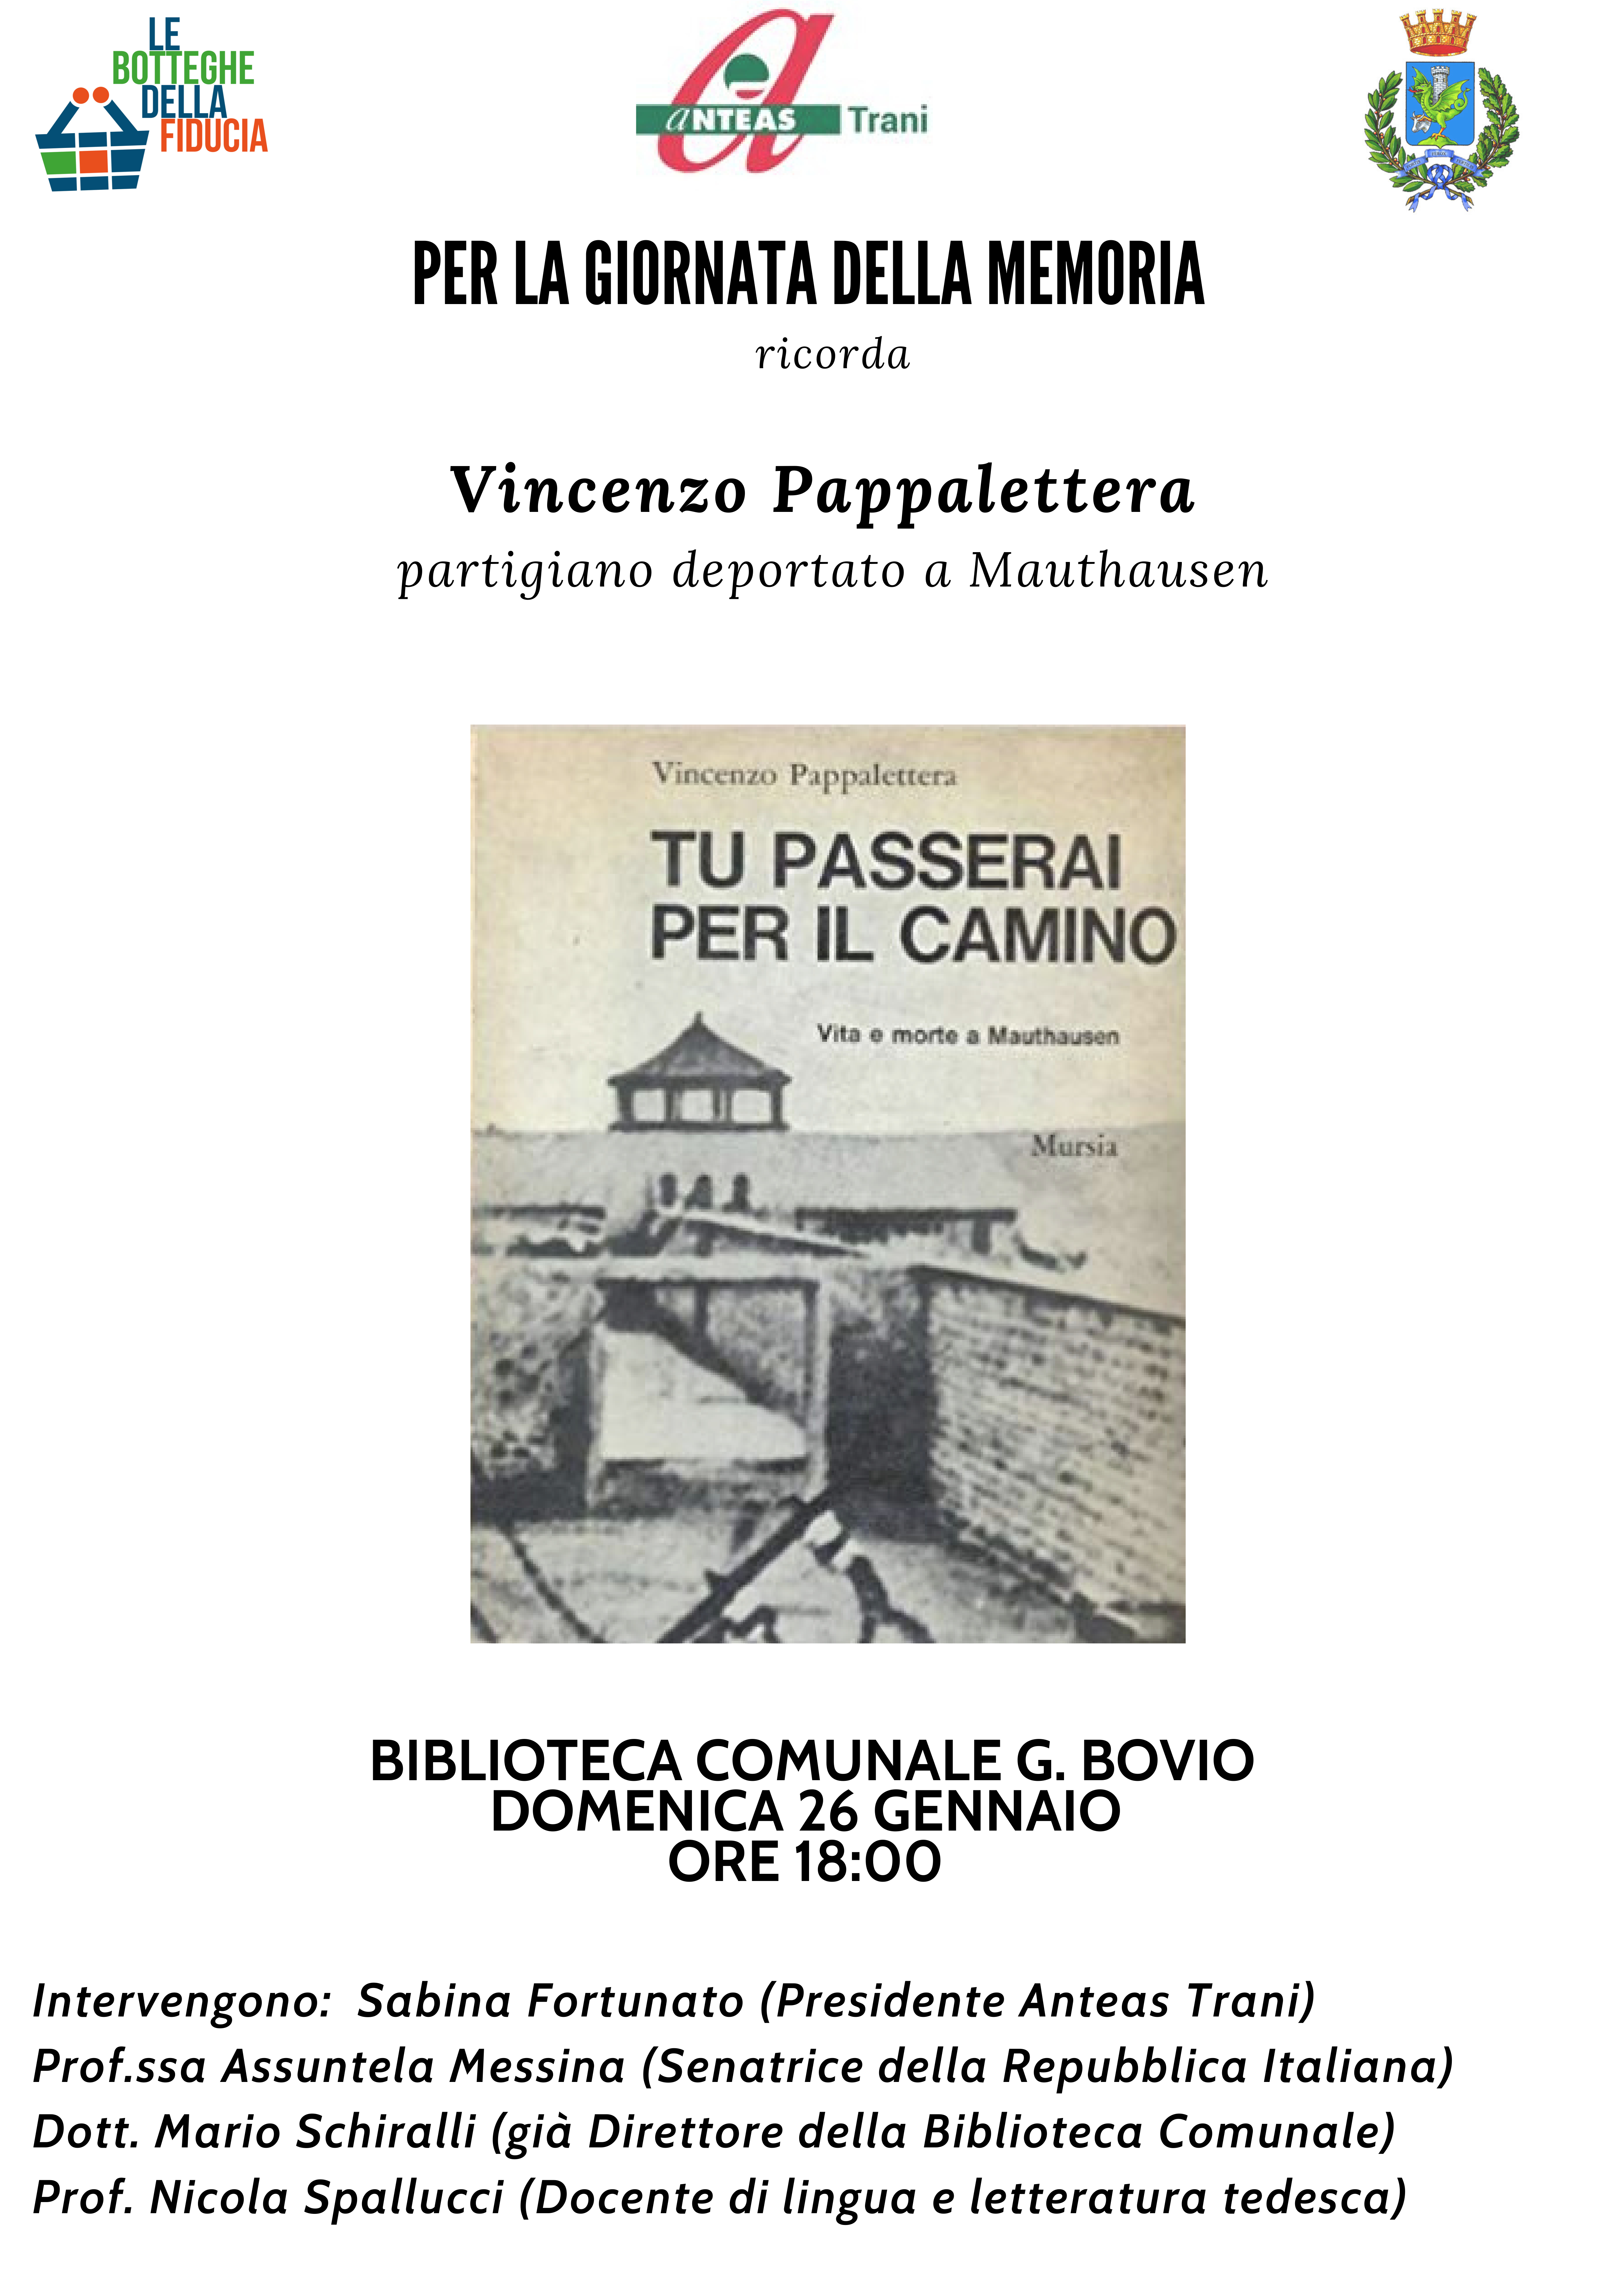 Locandina Vincenzo Pappalettera - Mauthausen - Giorno della Memoria 2020 ANTEAS Trani